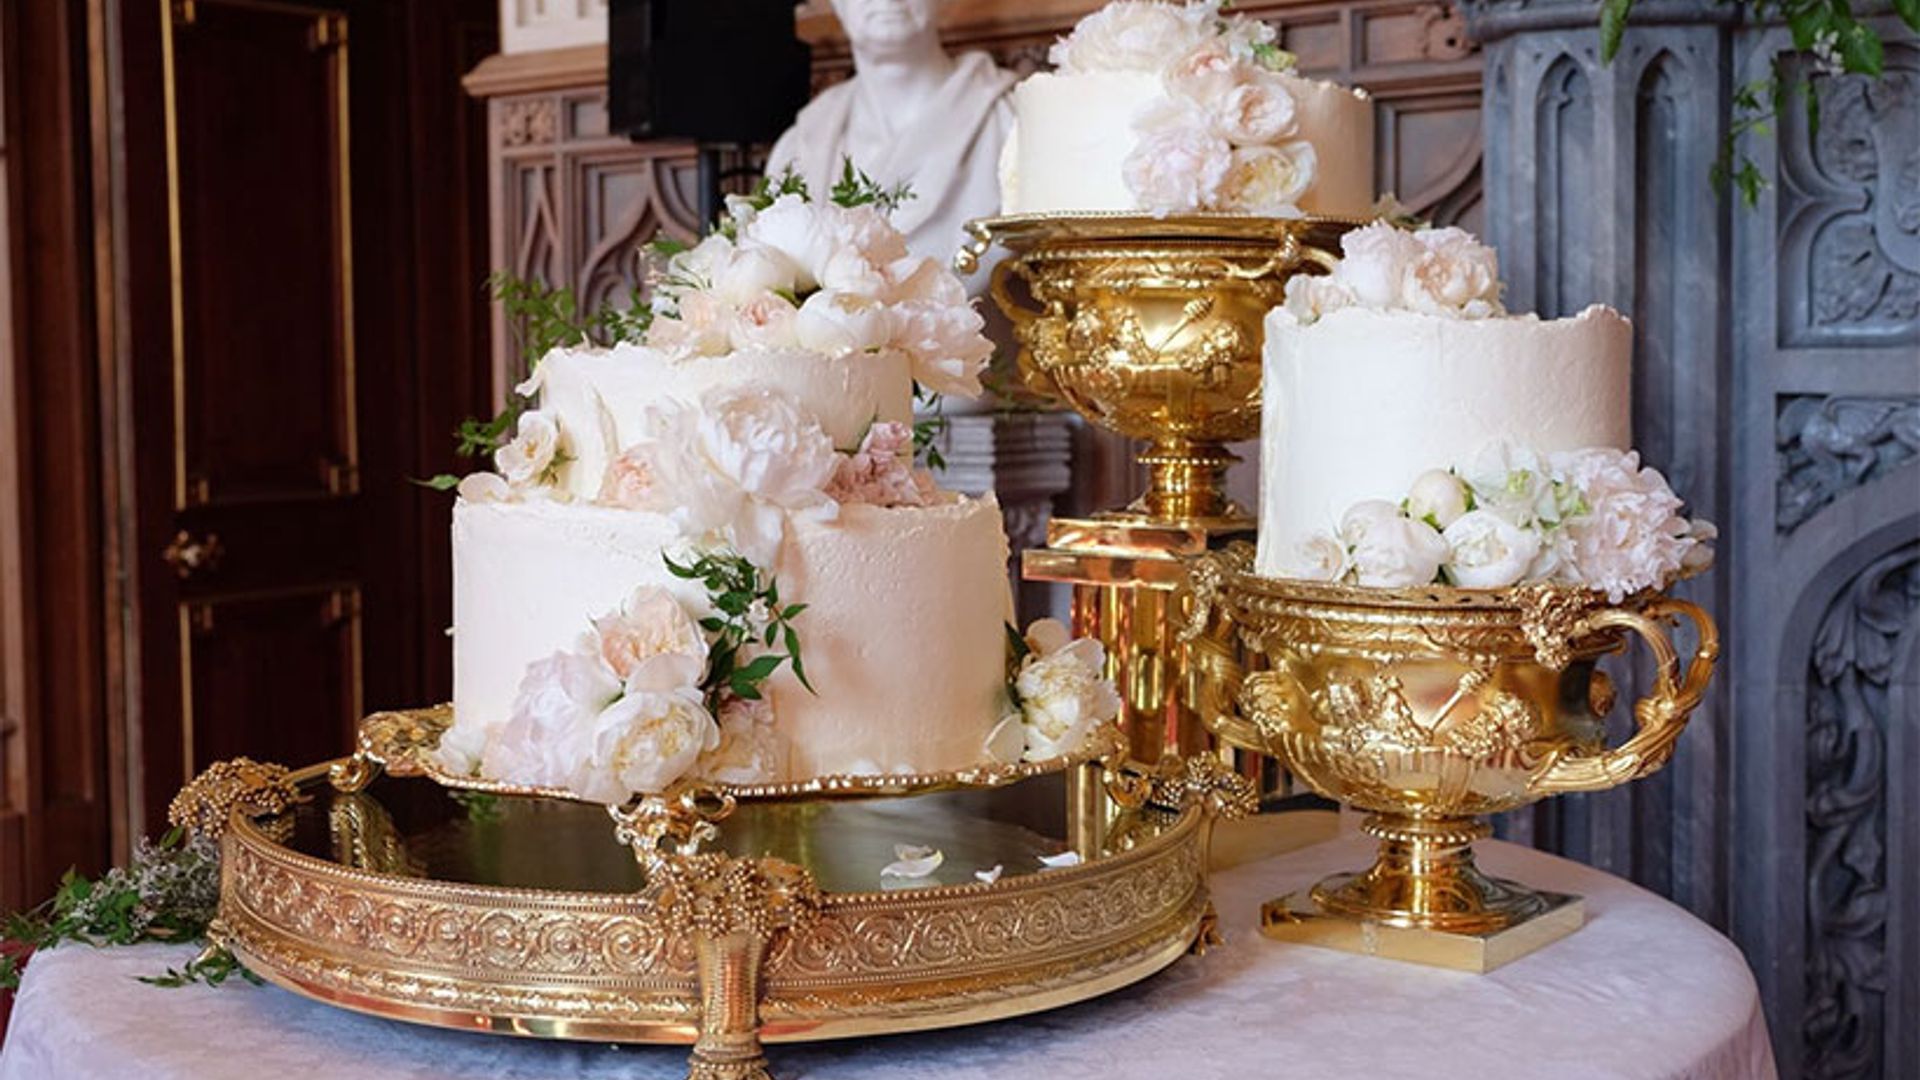 Resultado de imagem para royal wedding cake